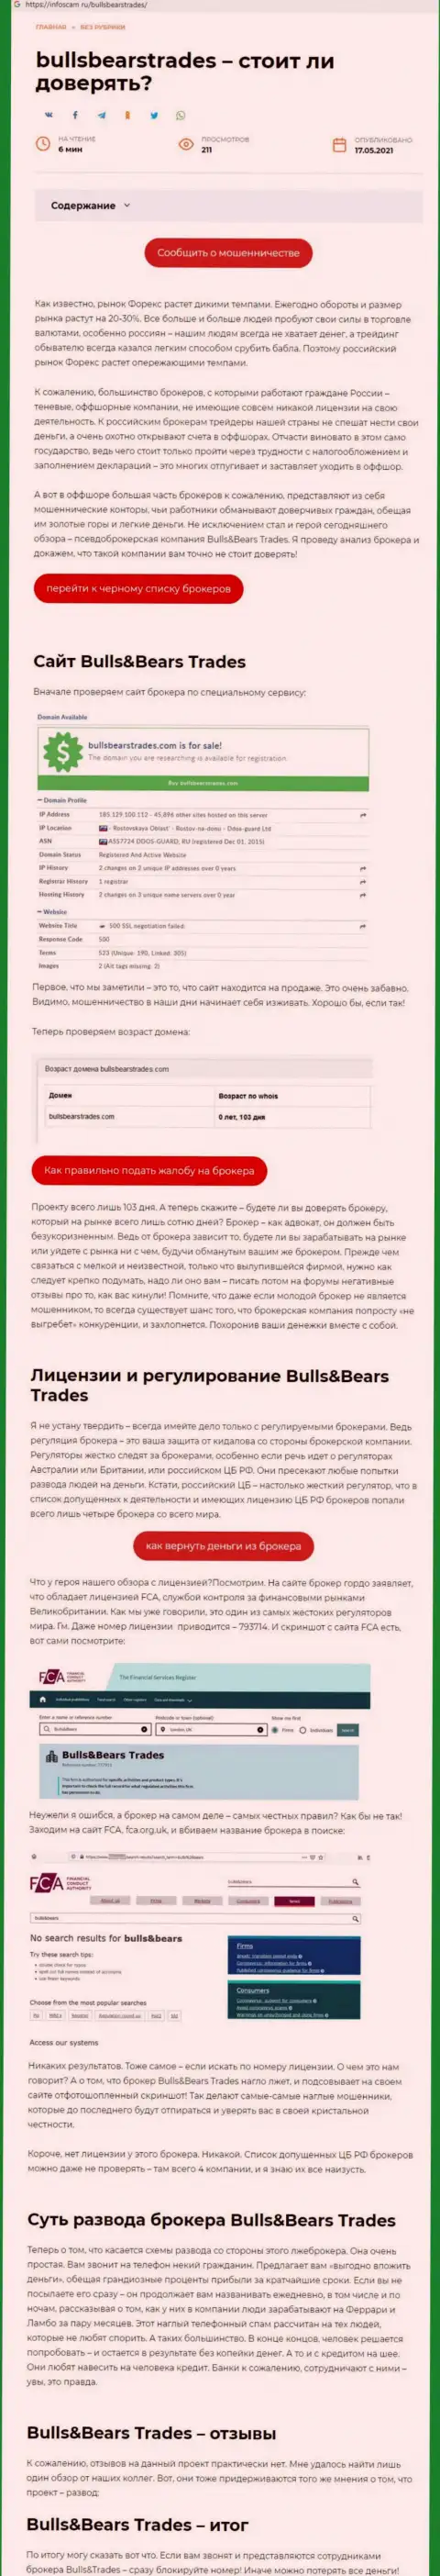 BullsBearsTrades - это МОШЕННИК !!! Приемы грабежа (обзор противозаконных действий)